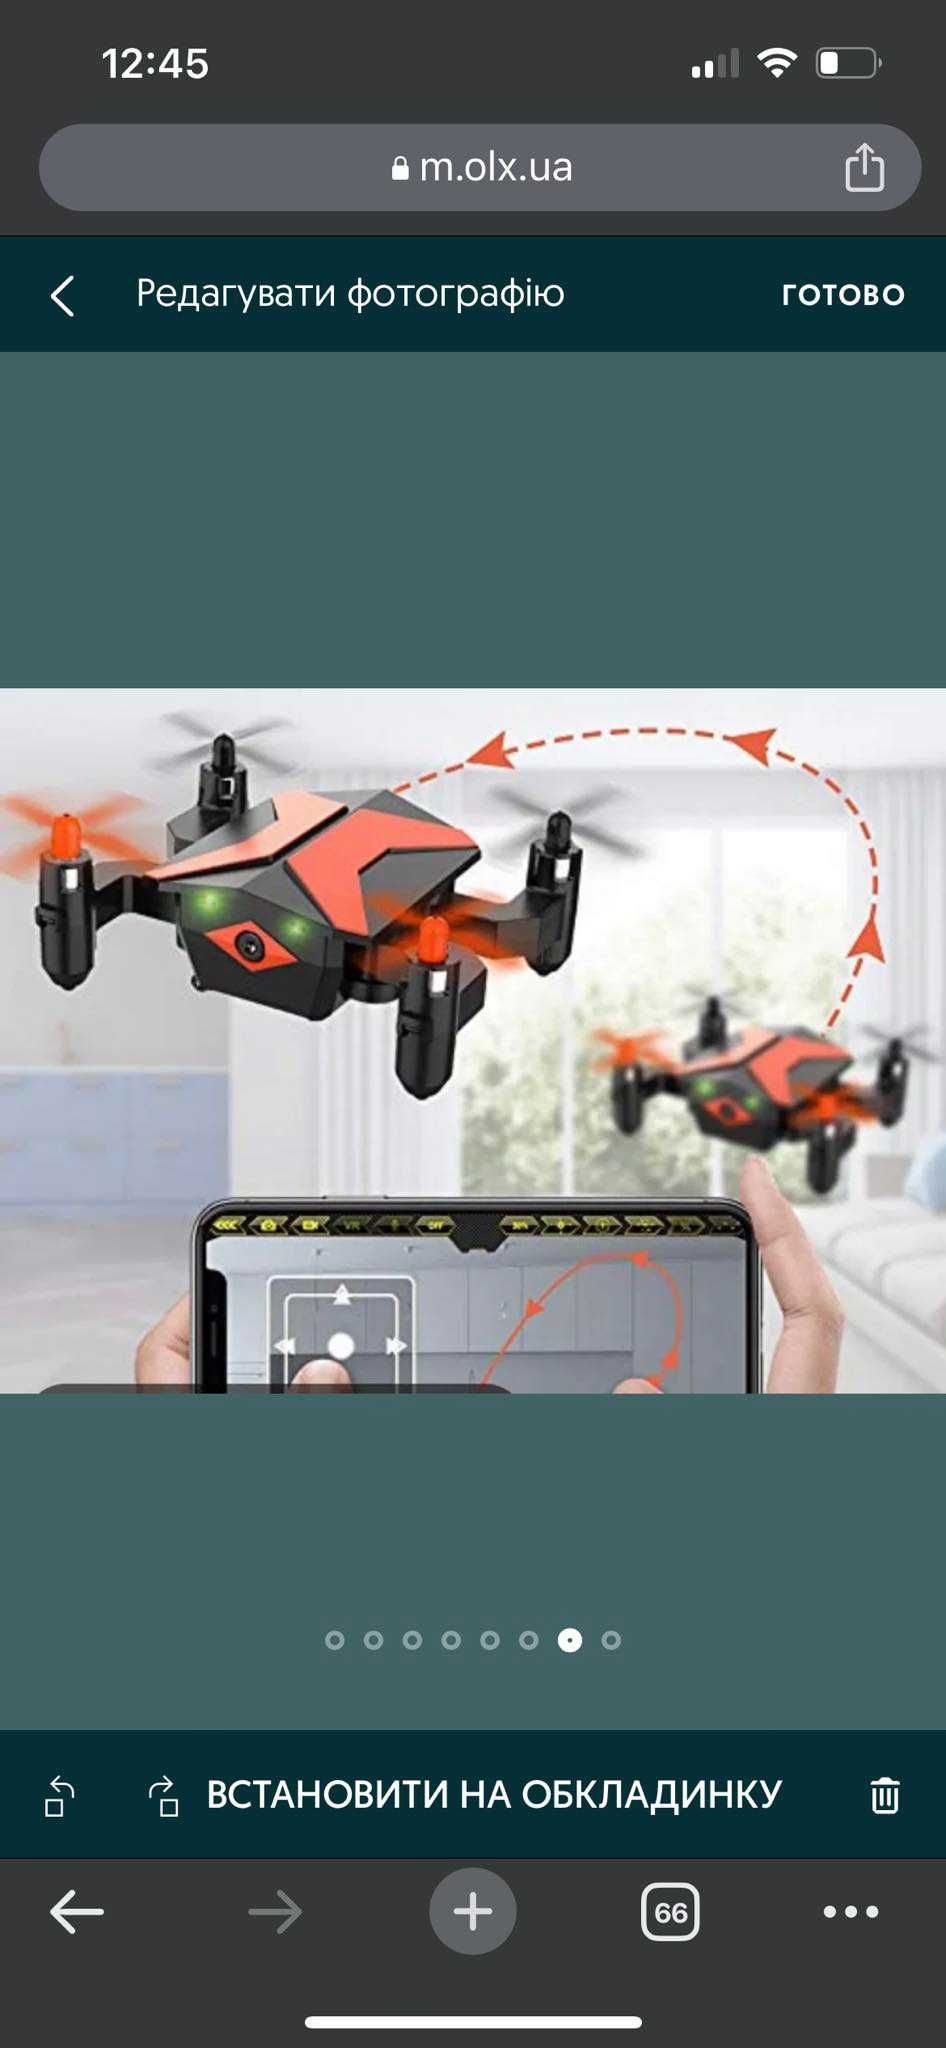 дрон сша Attop X Pack 2 Mini Drone Quadcopter новий